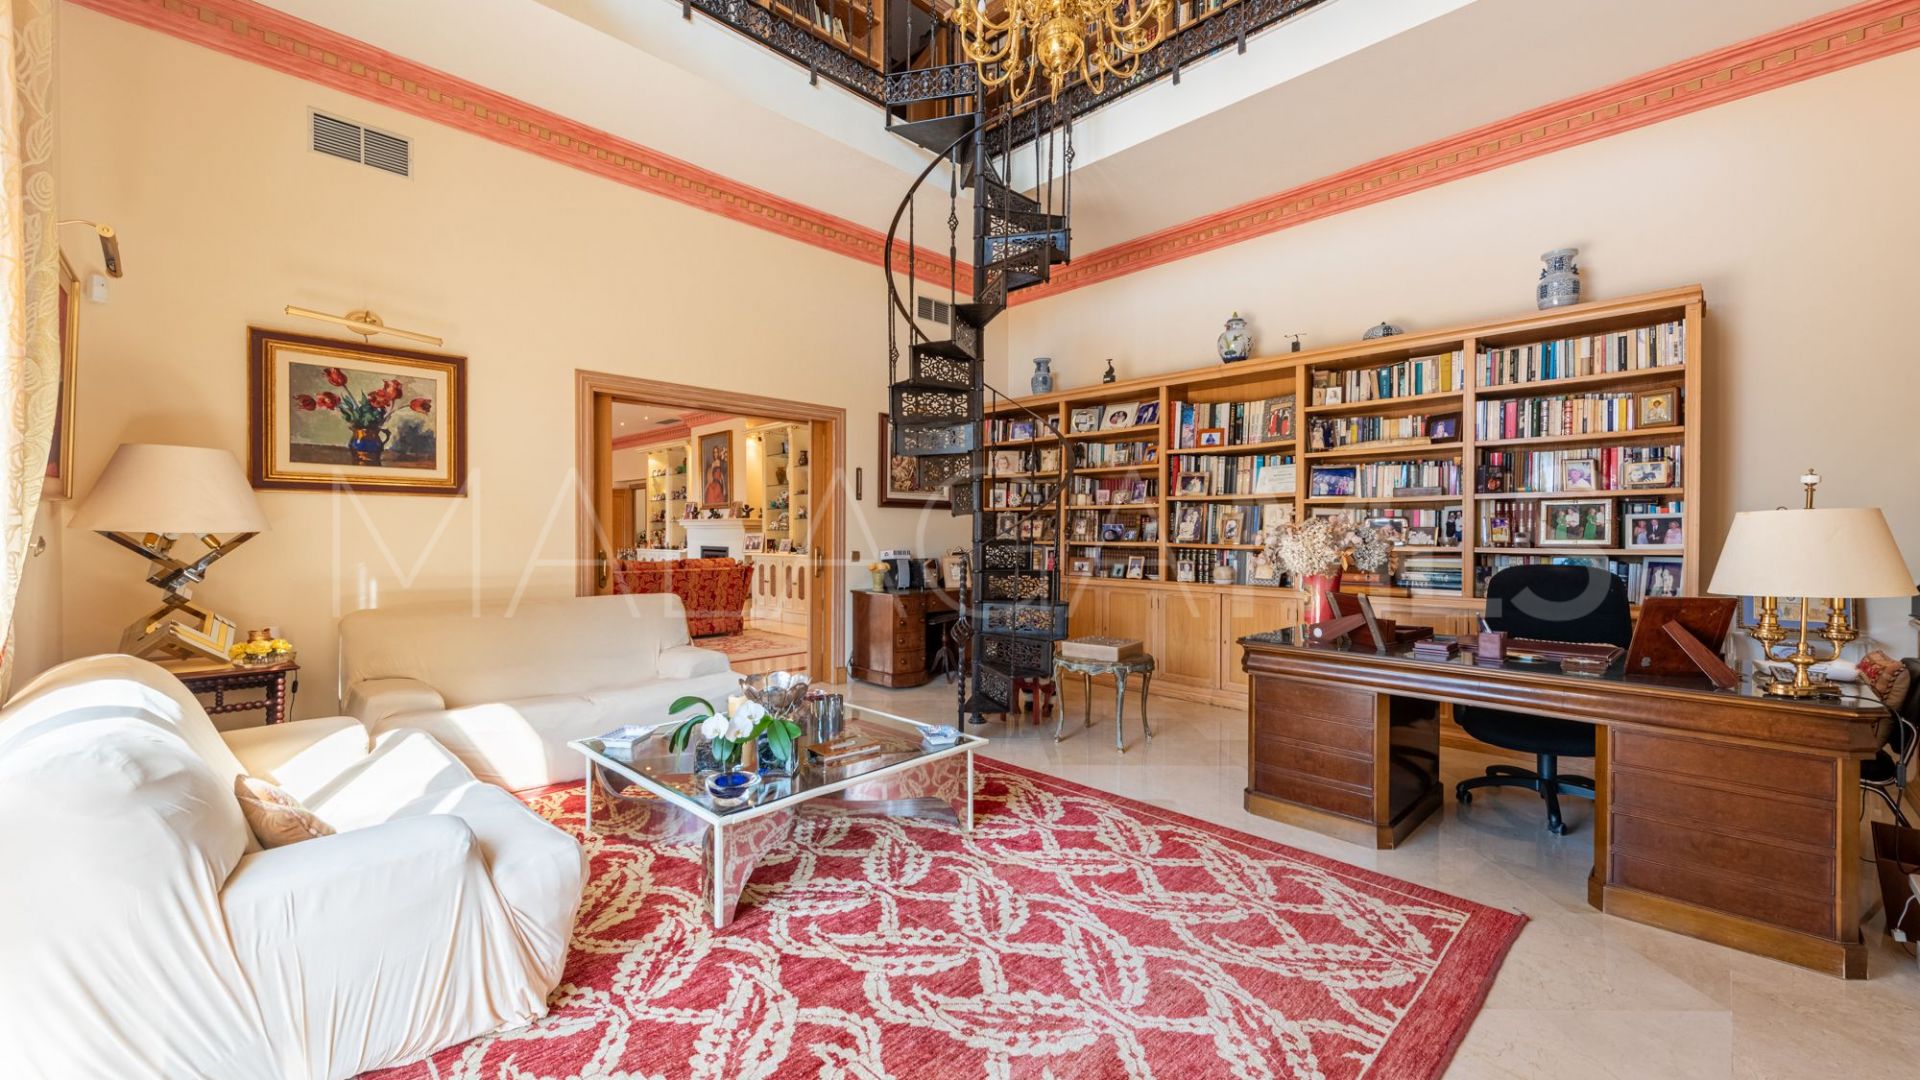 5 bedrooms villa in El Paraiso for sale